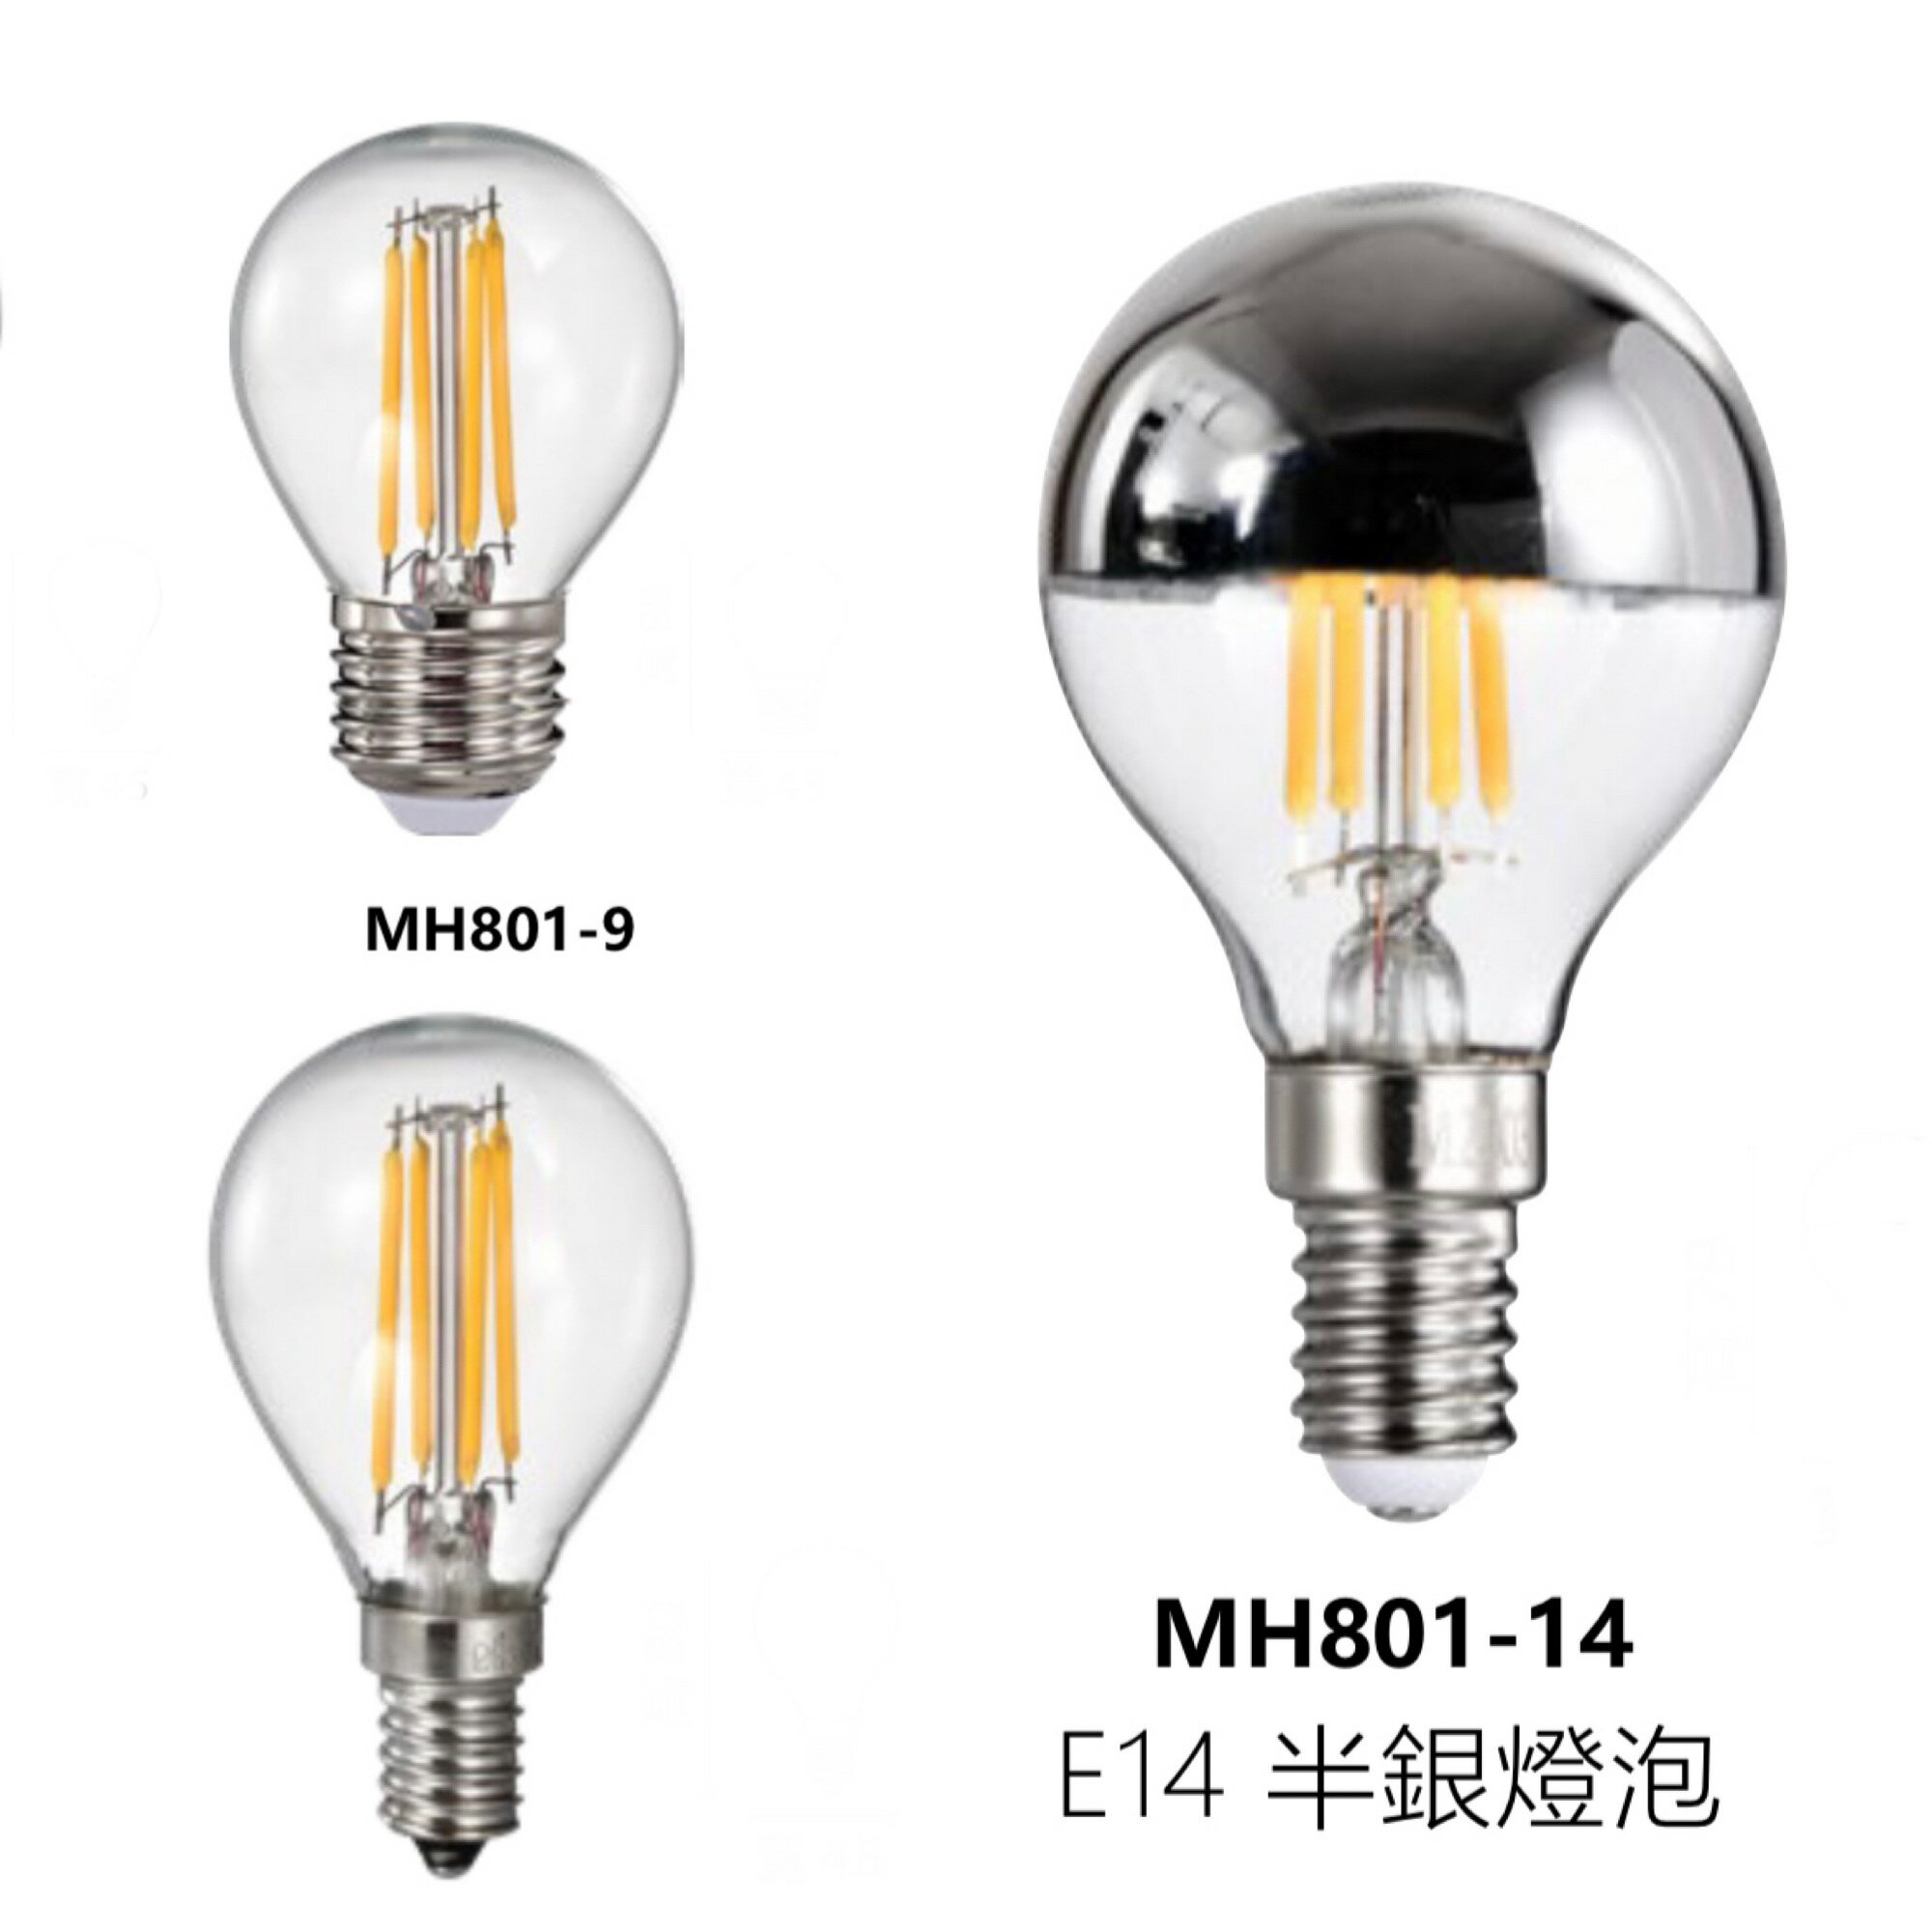 好時光~MARCH LED E27 E14 4W 燈絲燈 半銀燈泡 鎢絲燈泡 G45圓形 燈泡 燈絲球泡 110V MH801-8